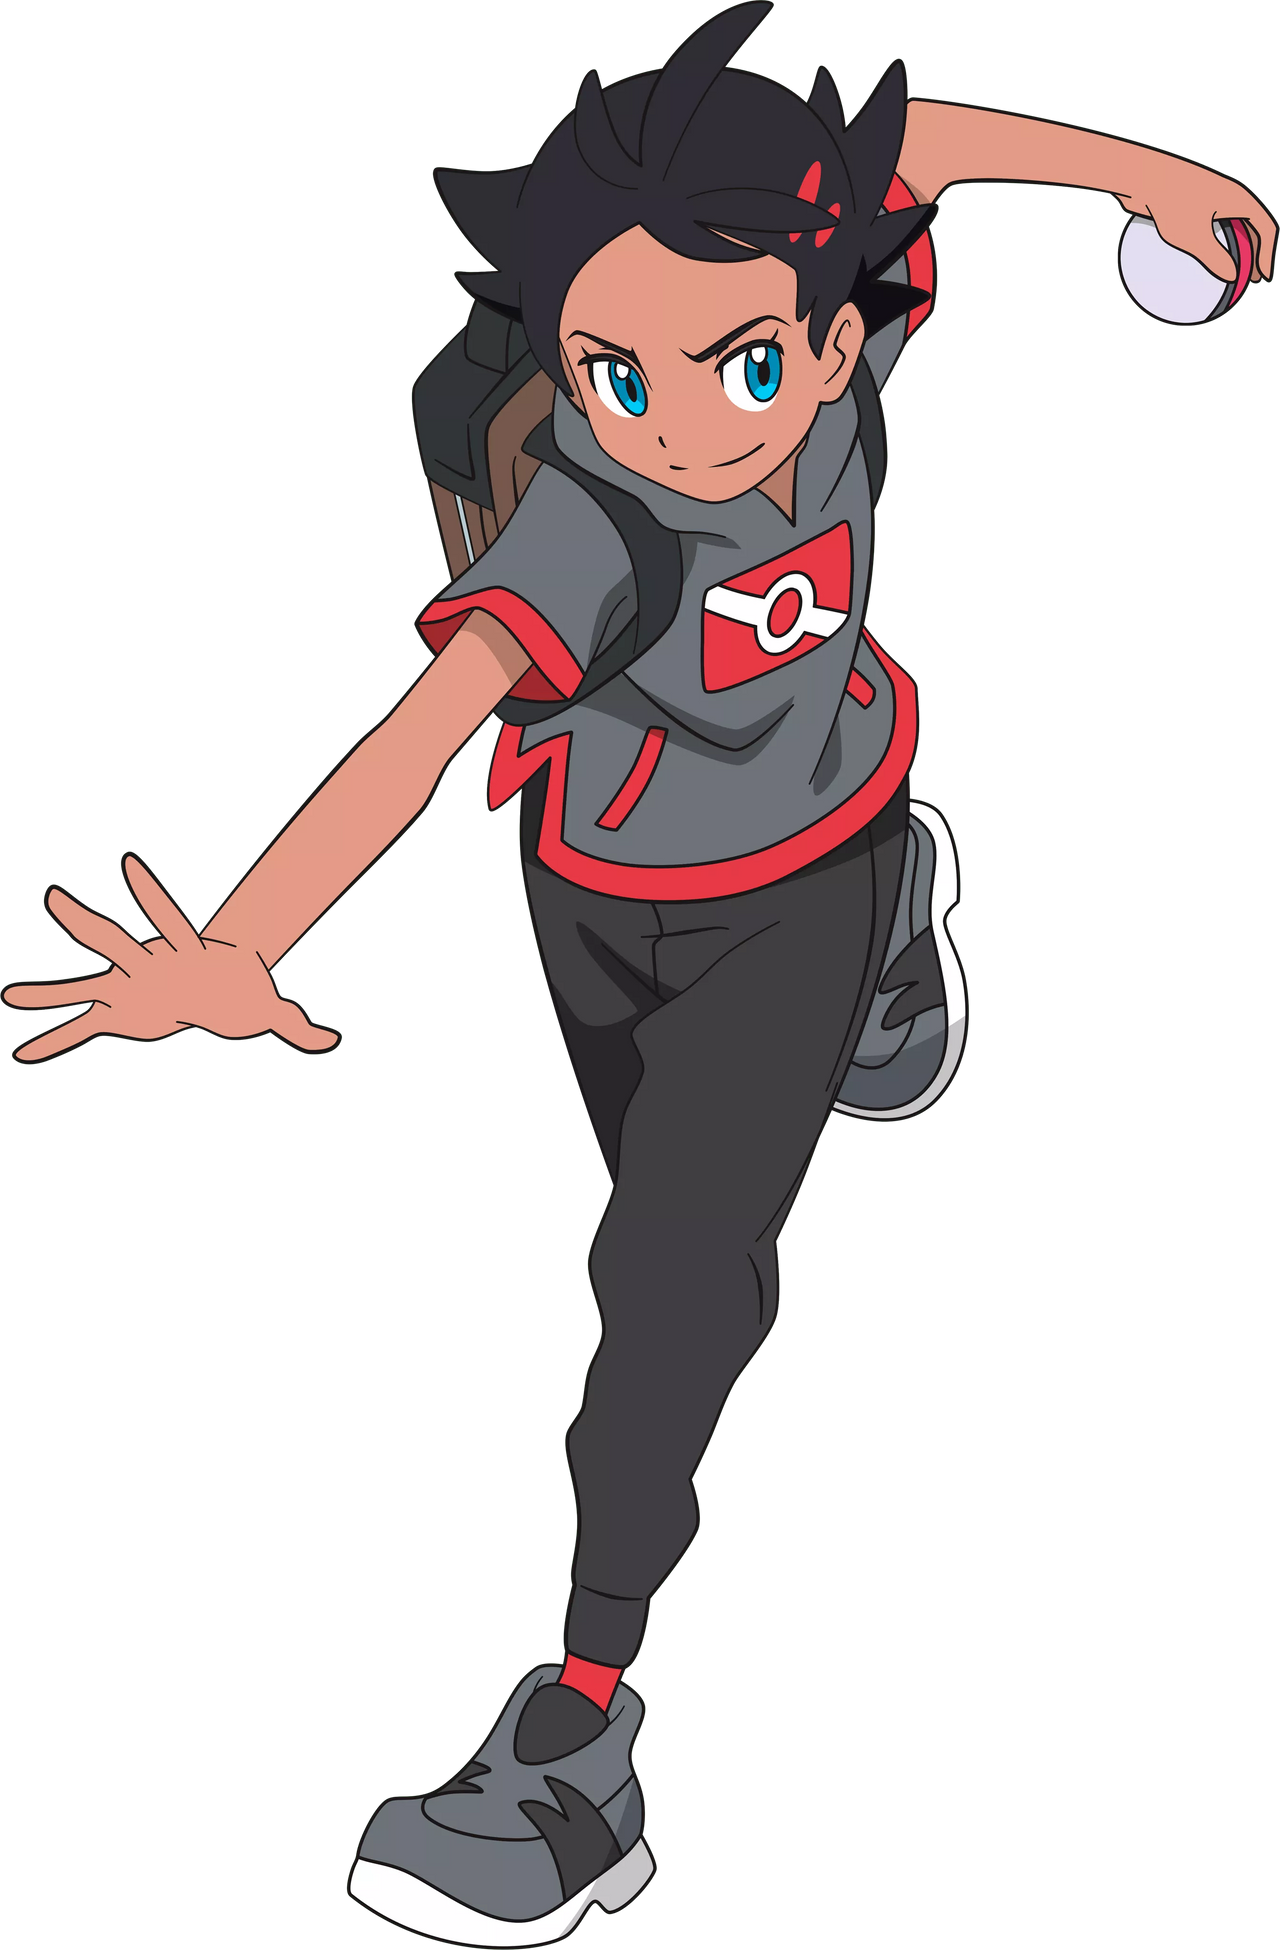 Pokémon Art - ID: 138862